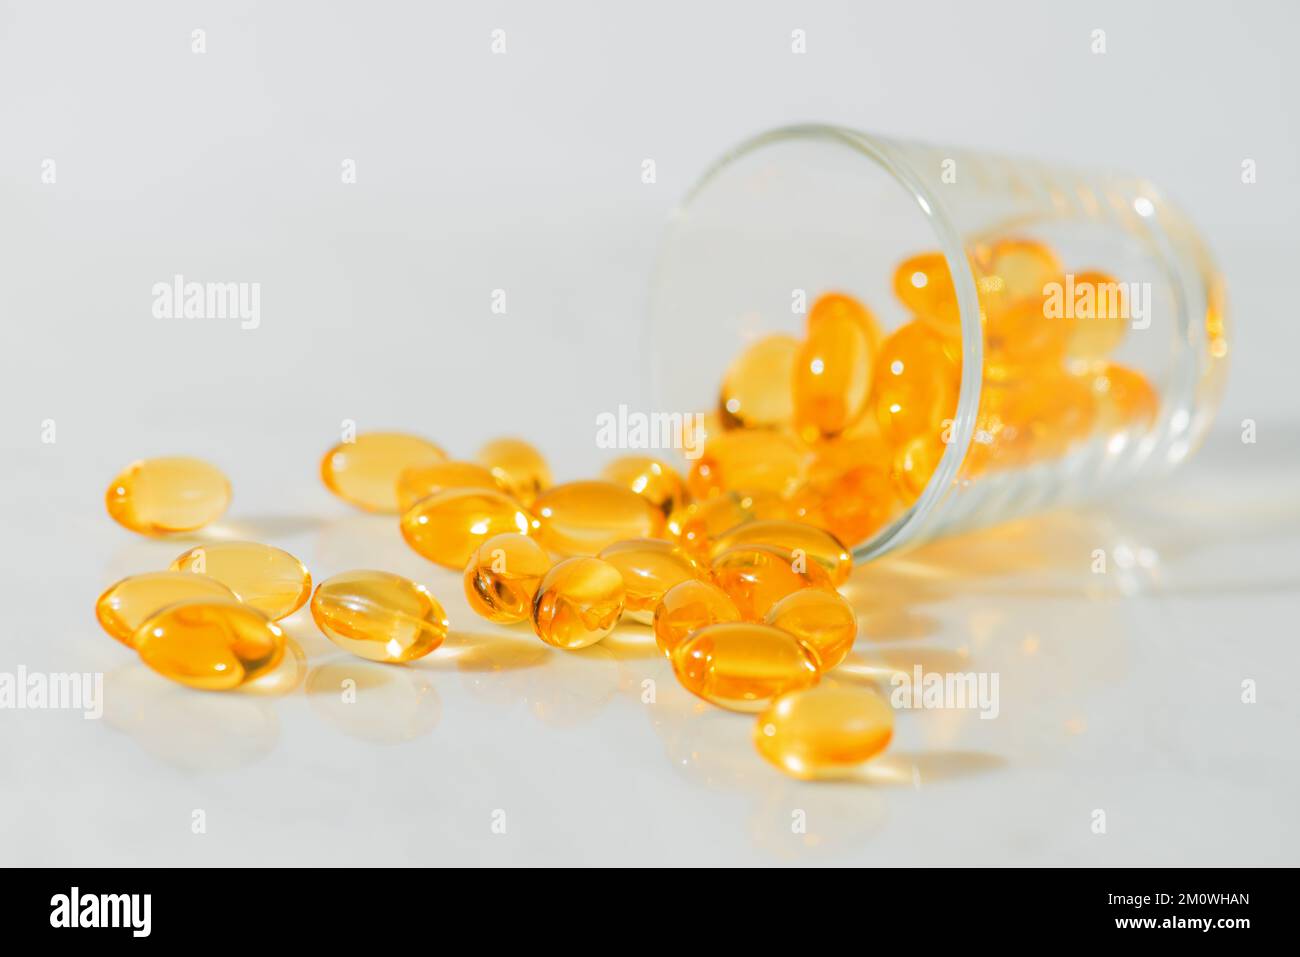 Fischöl Omega 3 Pillen Kapseln in einer Glasflasche auf weißem Marmorhintergrund, gesunde Ernährung, Nahrungsergänzungsmittel, Vitamine D. Stockfoto